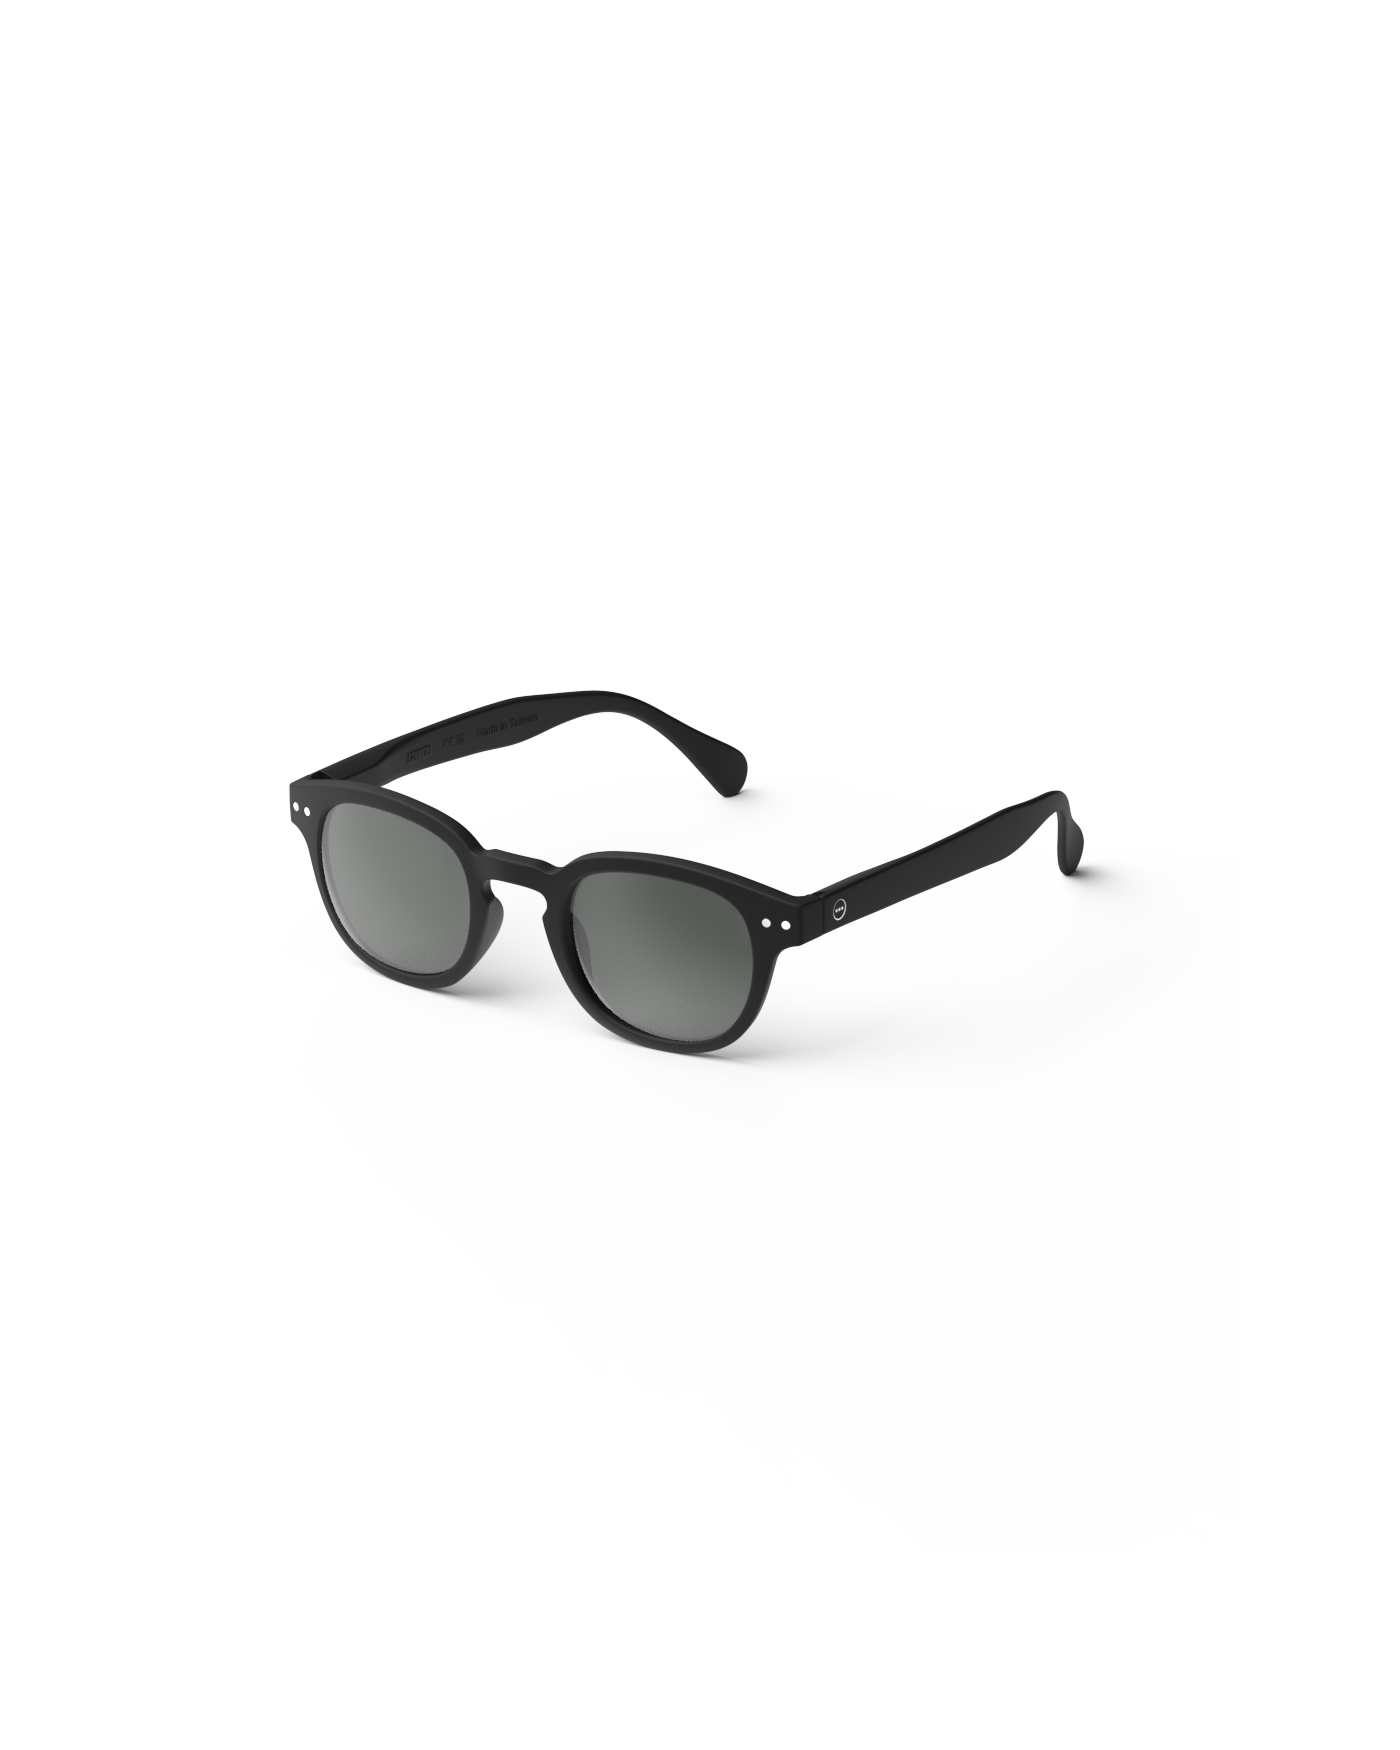 IZIPIZI Sunglasses  - #C Shape Black